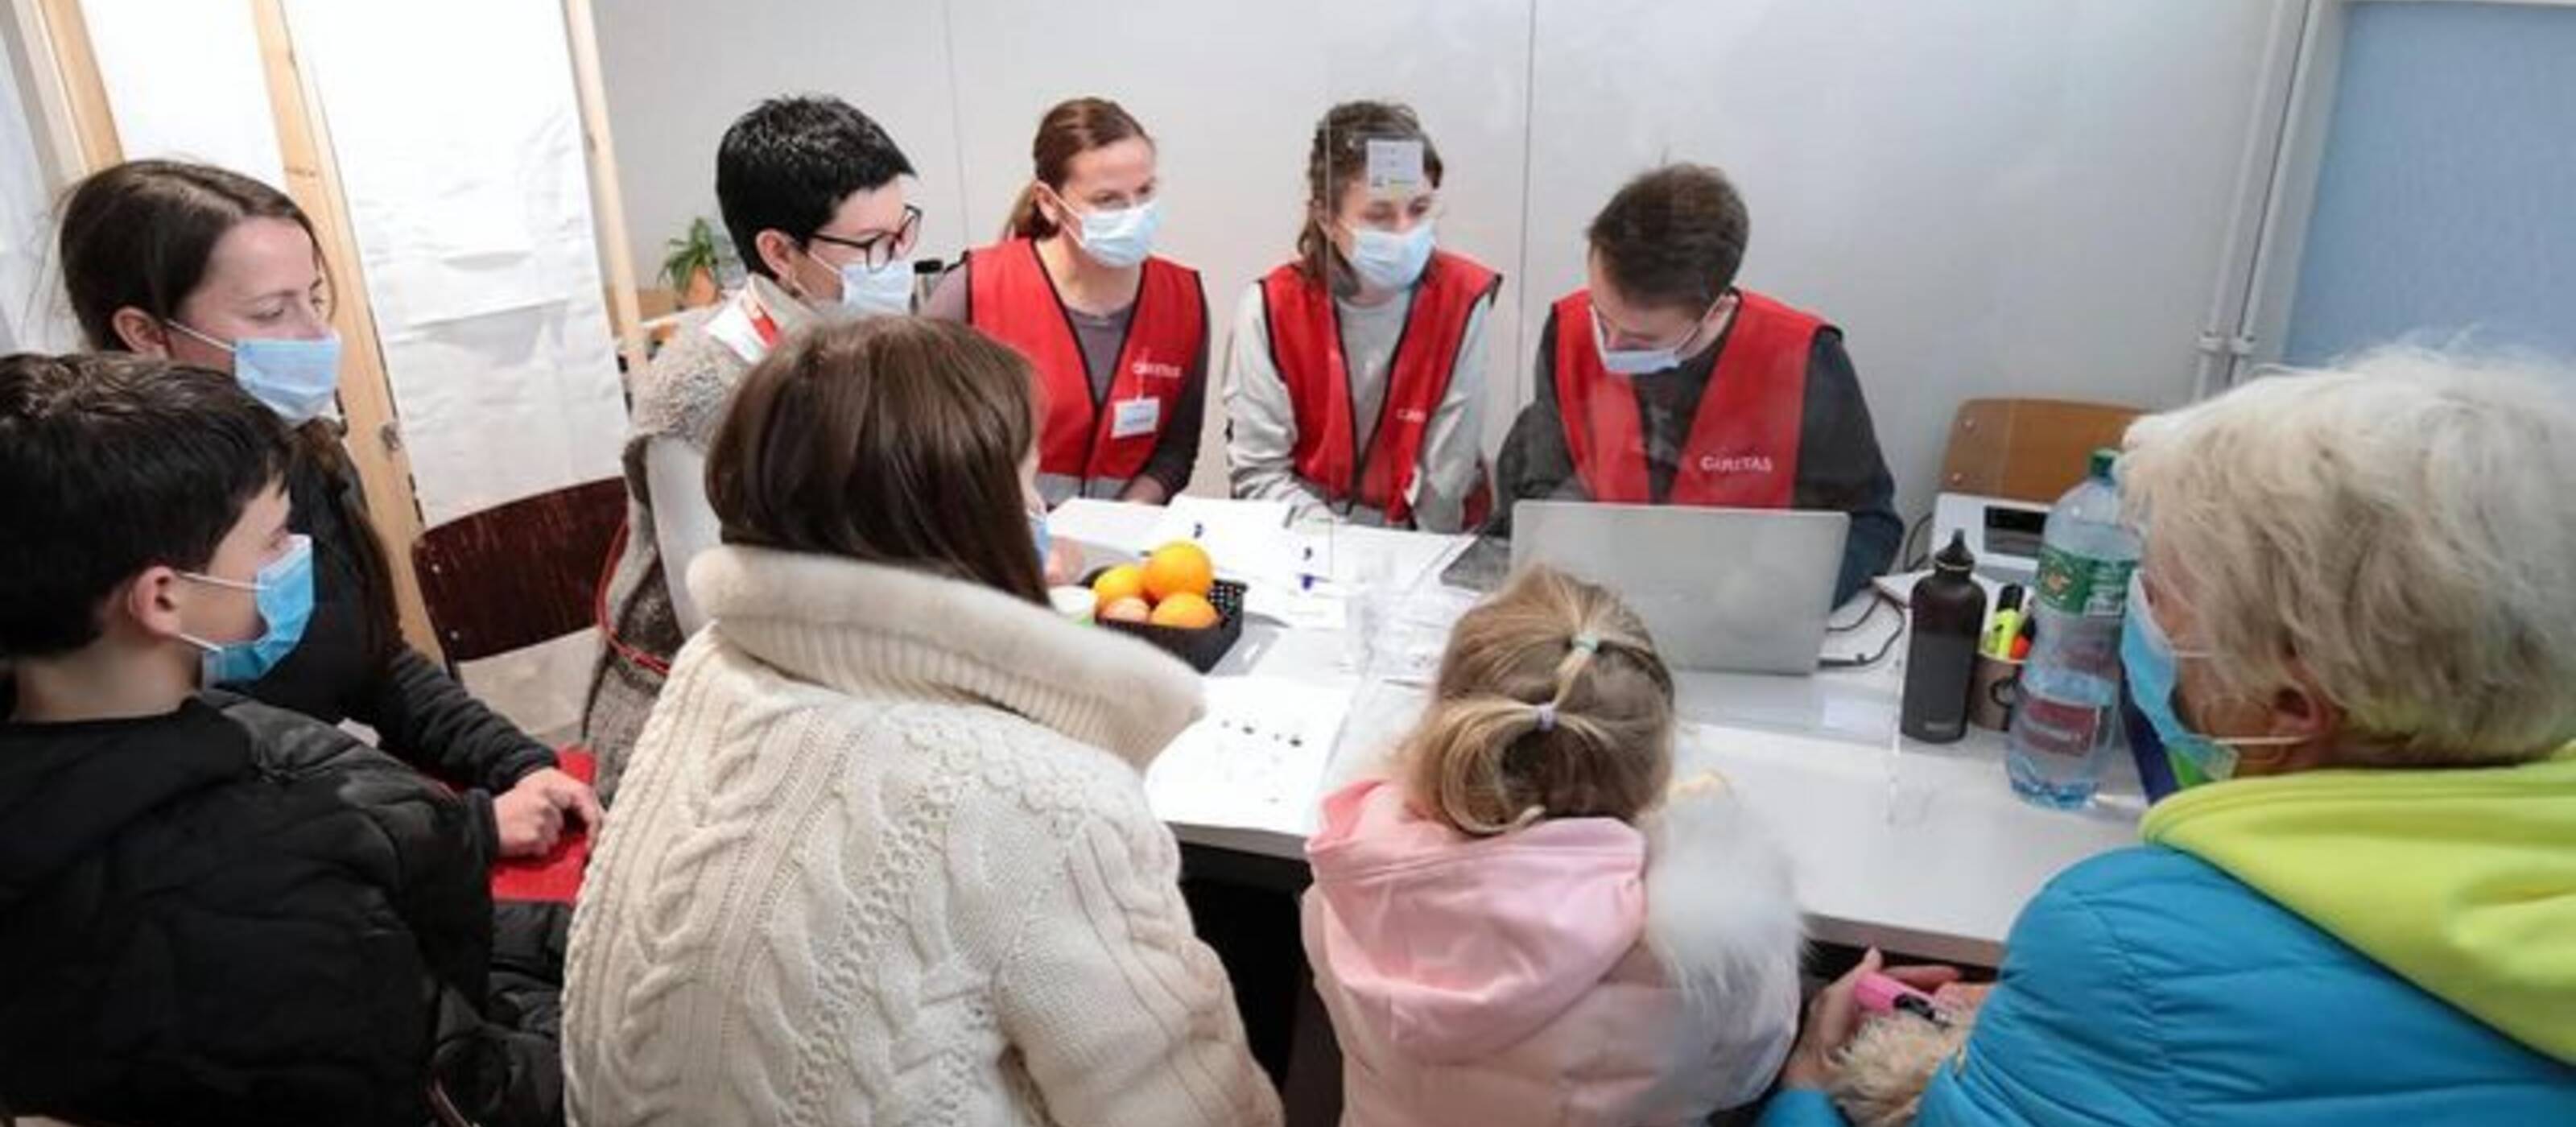 Des collaborateurs de Caritas Suisse enregistrent un groupe de réfugiés ukrainiens qui demandent le statut de protection S au centre fédéral de Boudry.